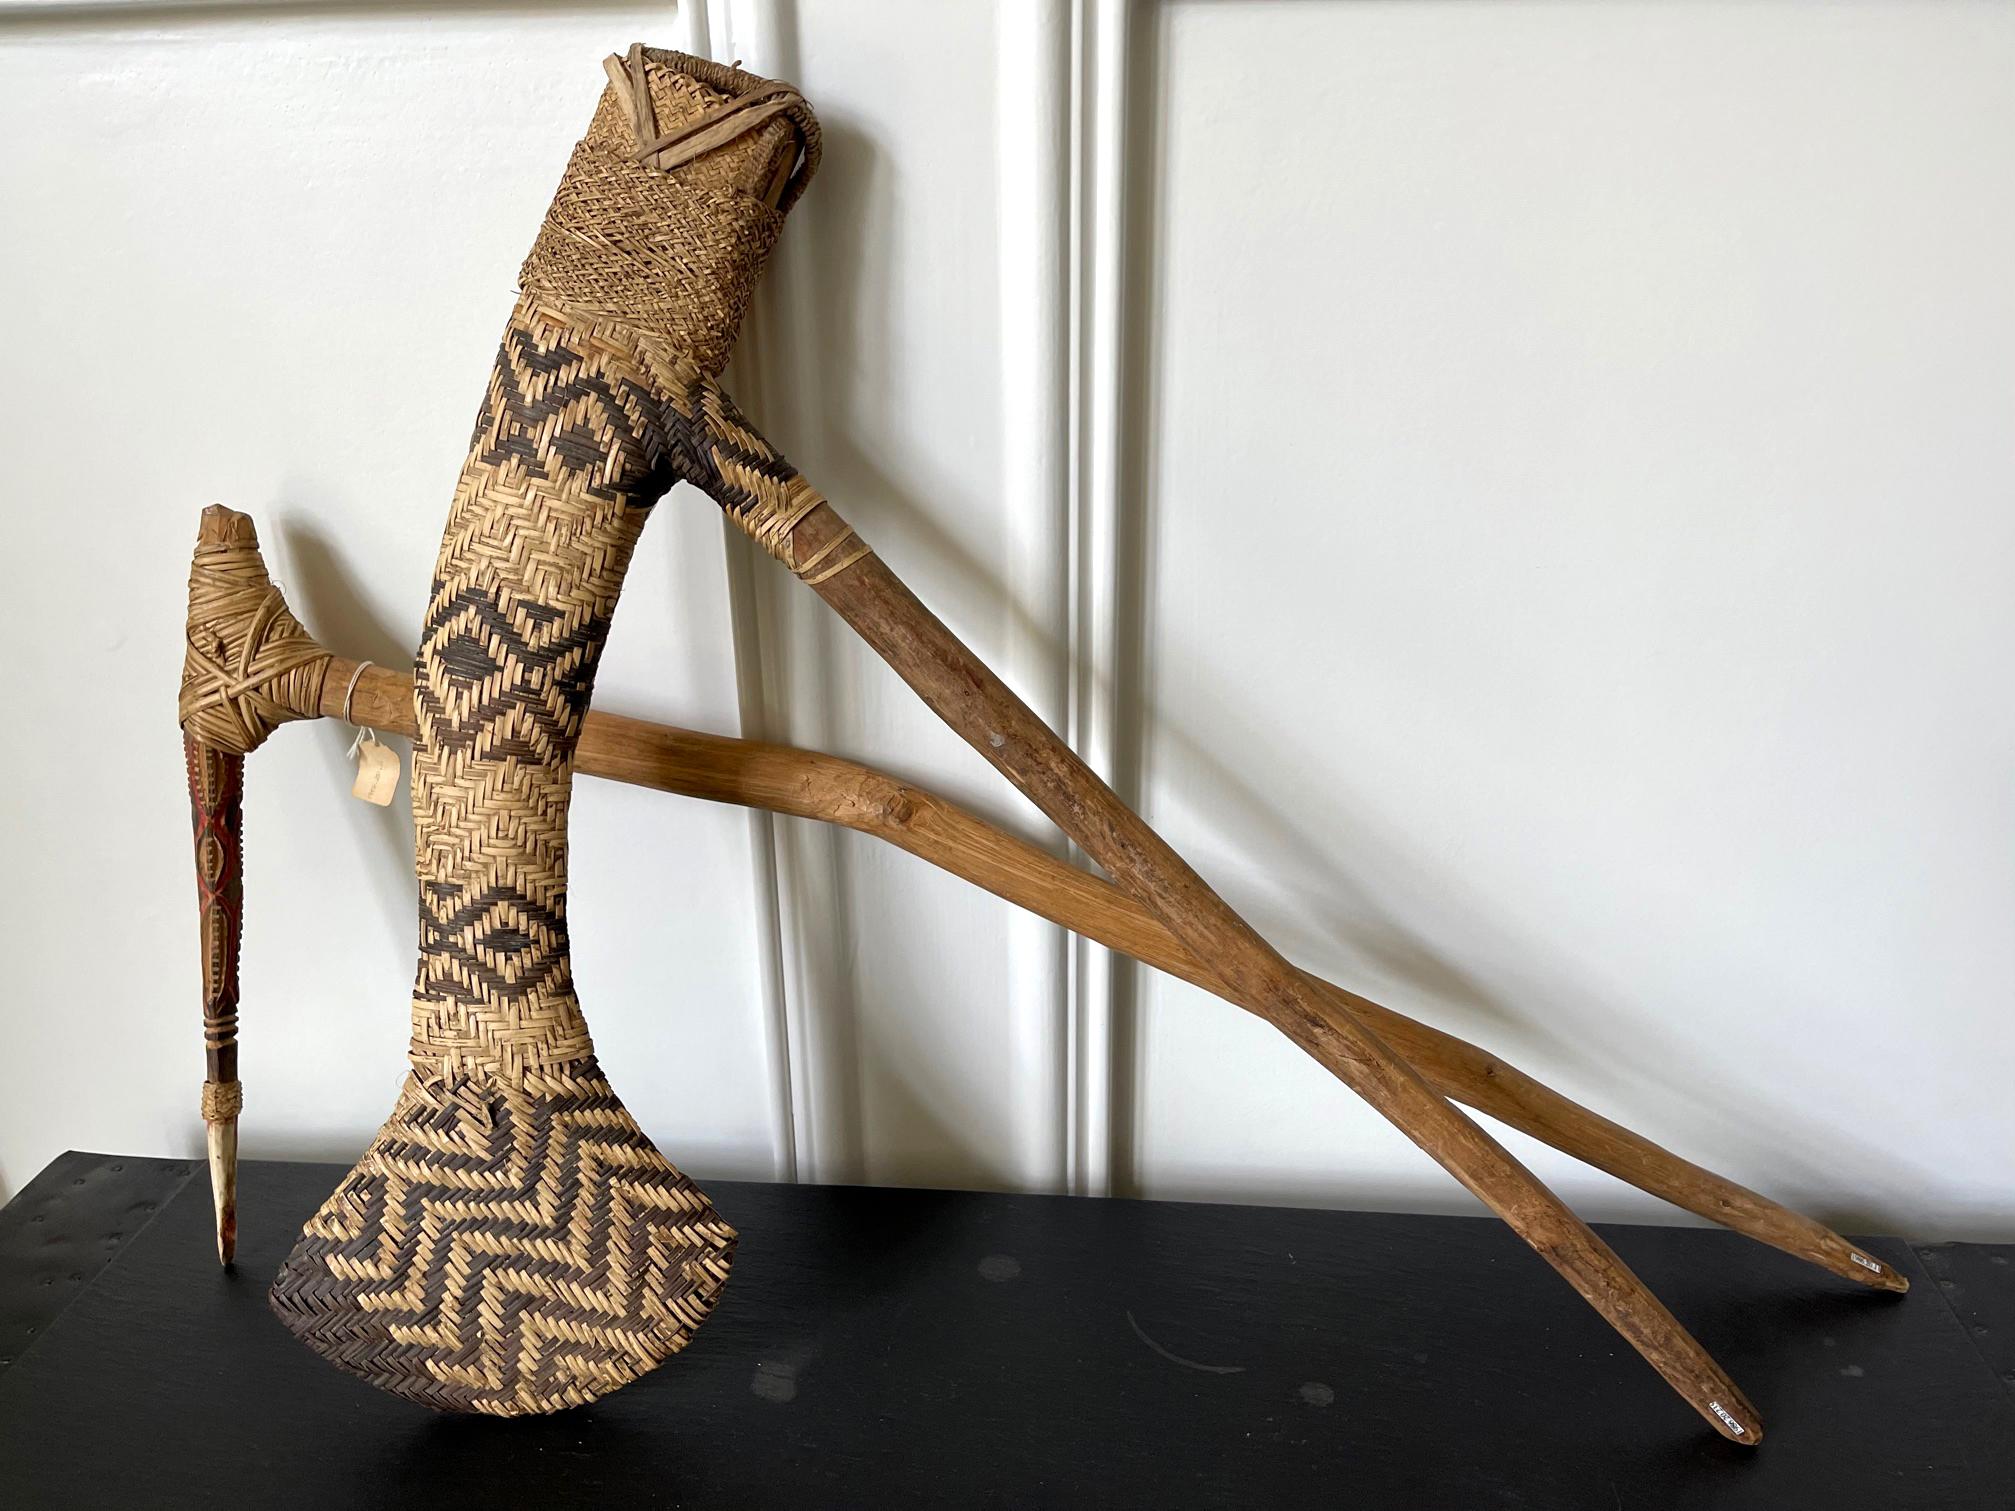 Deux armes cérémonielles océaniennes provenant des hauts plateaux de PNG vers le 20e siècle. Il se compose de deux pièces. La première est une hache avec un manche en bois et une tête plate et allongée enveloppée dans une gaine en rotin finement